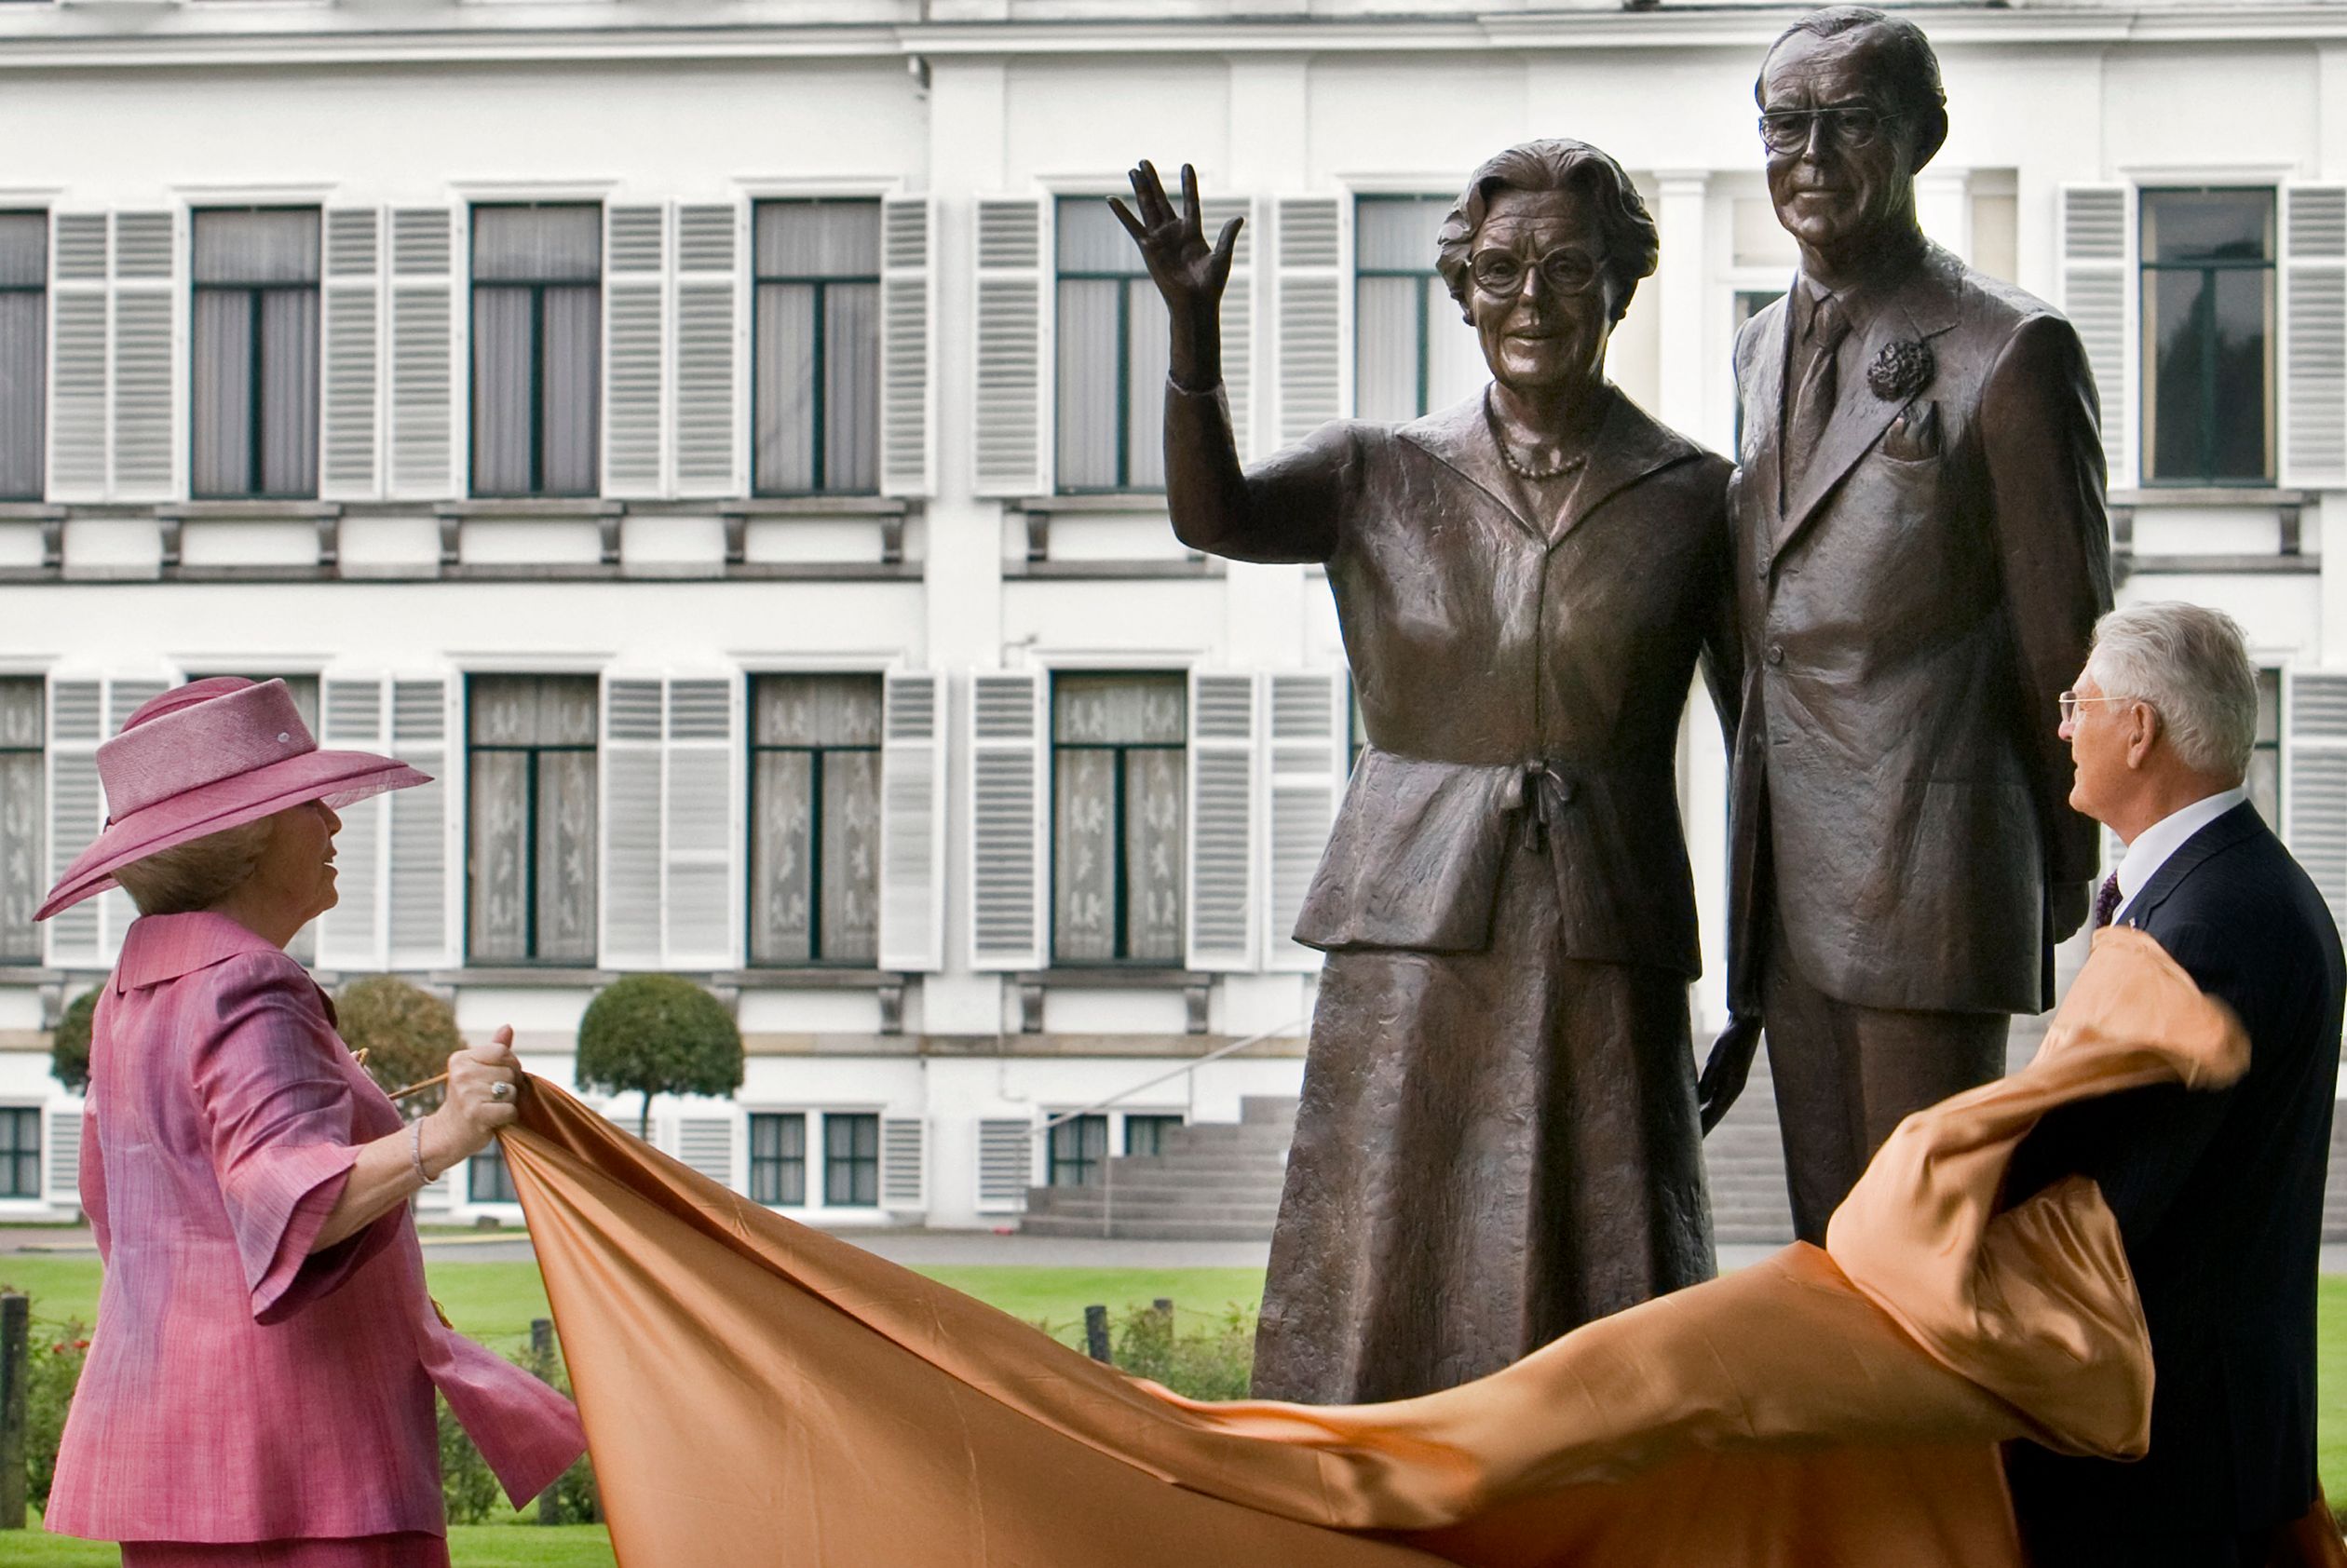 In mei 2009 onthult koningin Beatrix in de tuin van Paleis Soestdijk de beelden van haar ouders